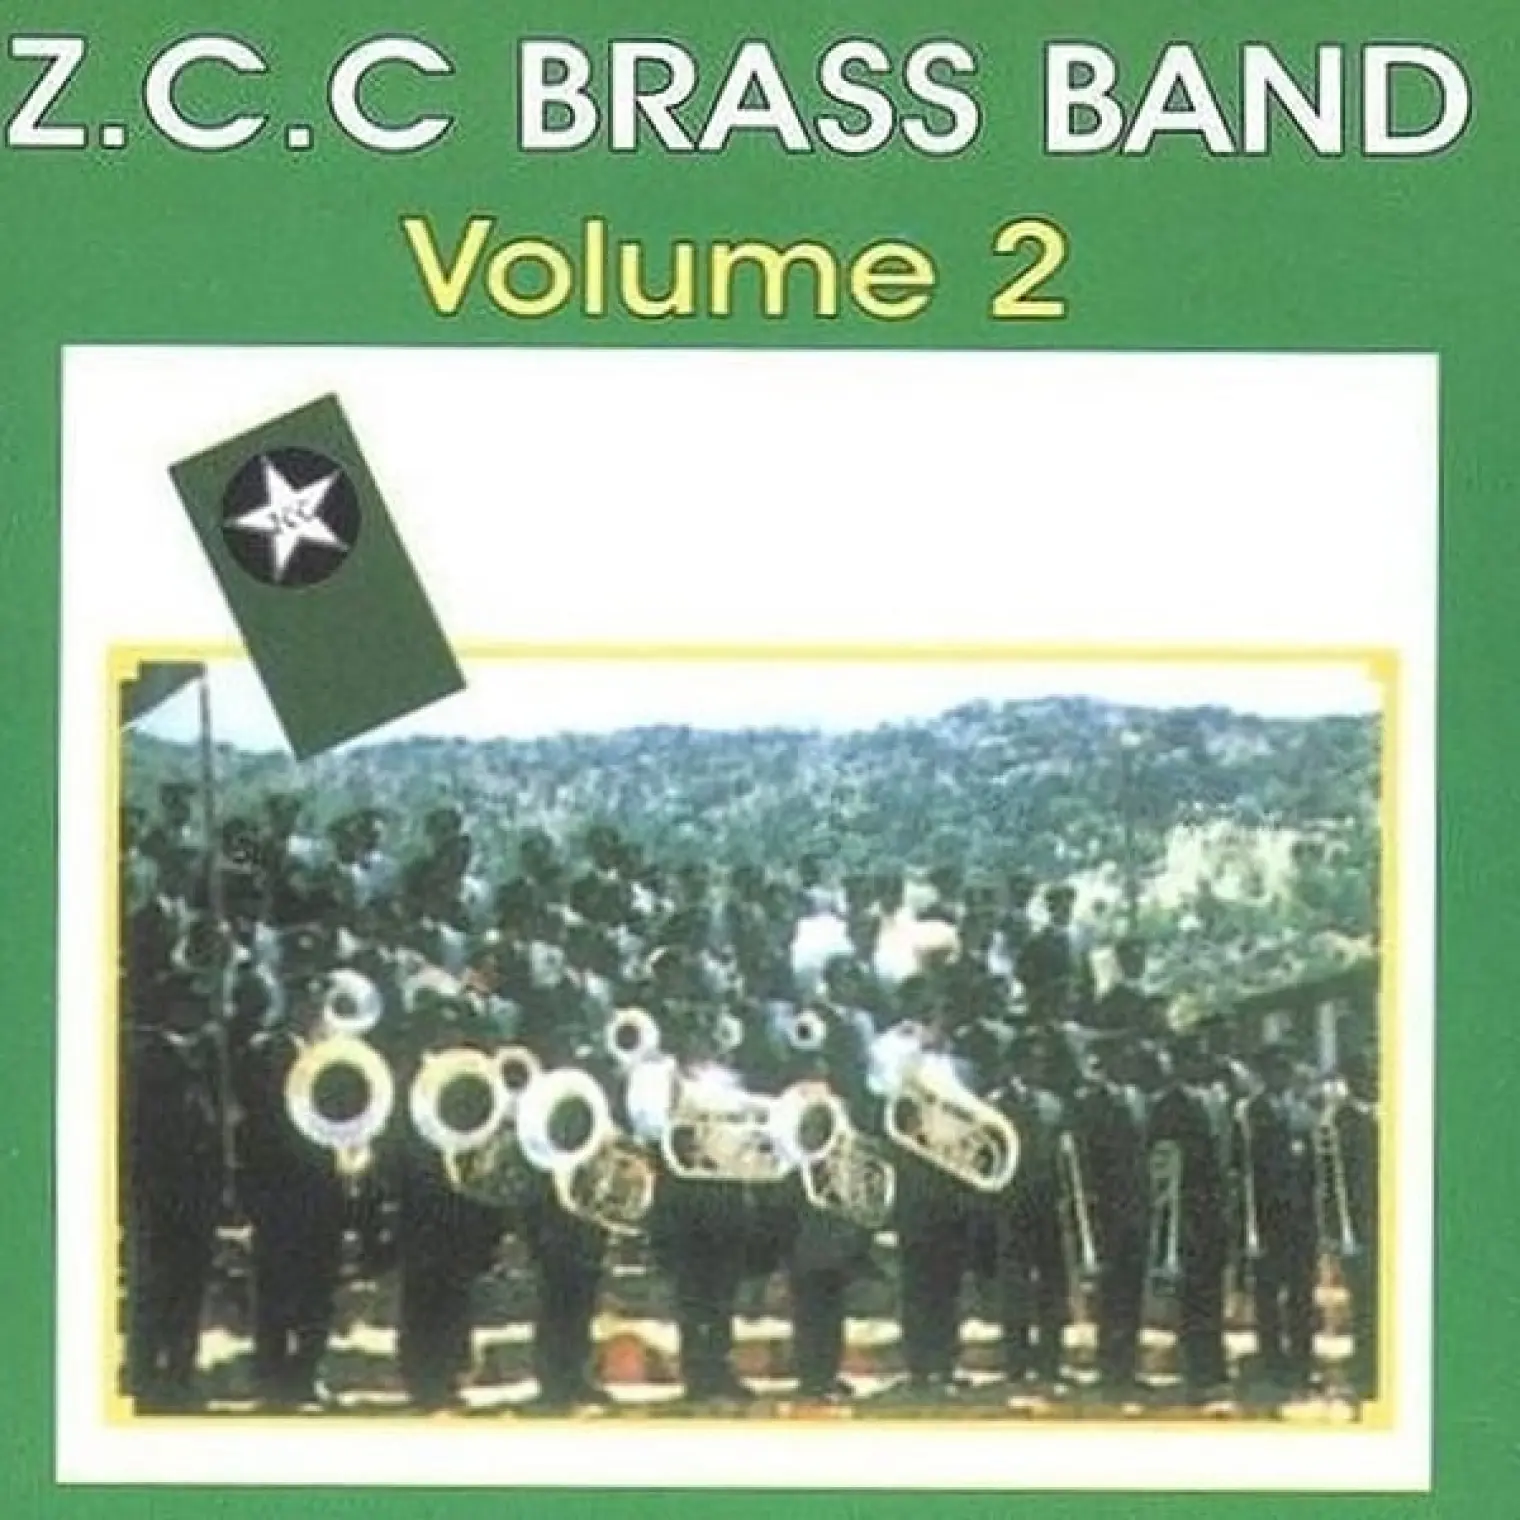 Z.C.C. Brass Band Vol 2 -  Z.C.C. Brass Band 